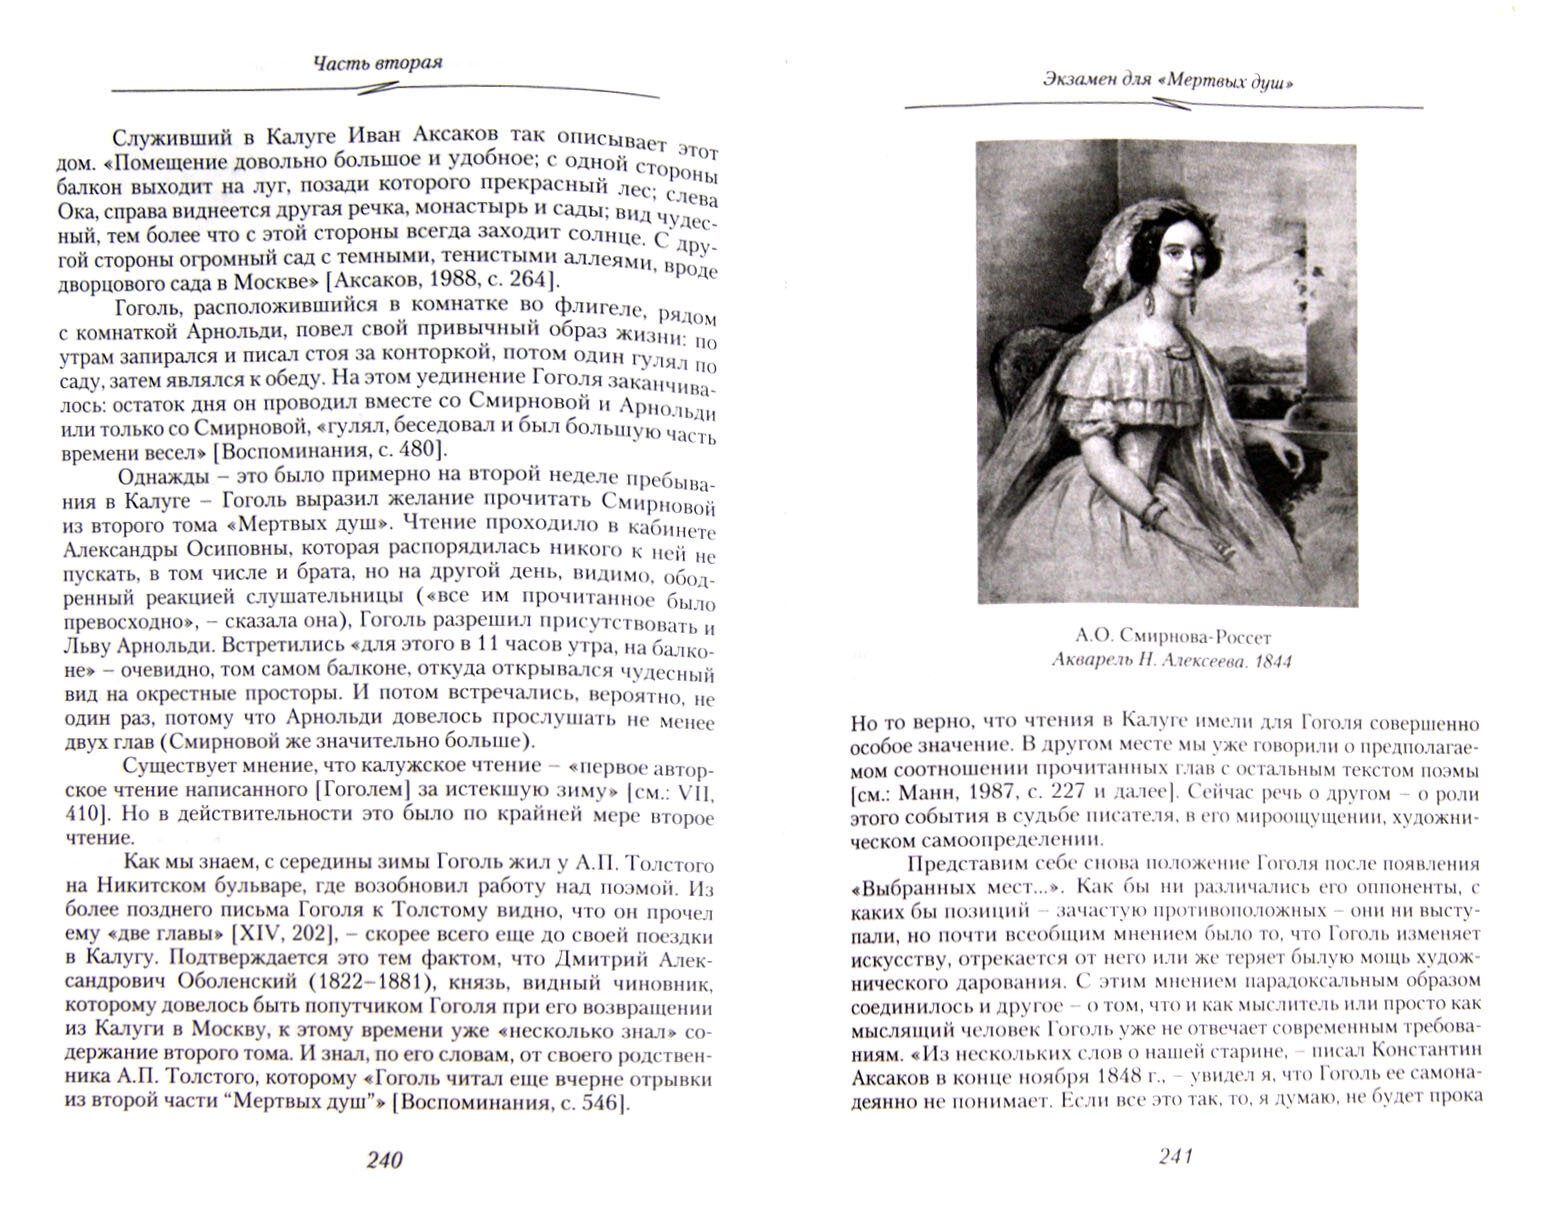 Гоголь. Книга третья. Завершение пути. 1845-1852 - фото №6